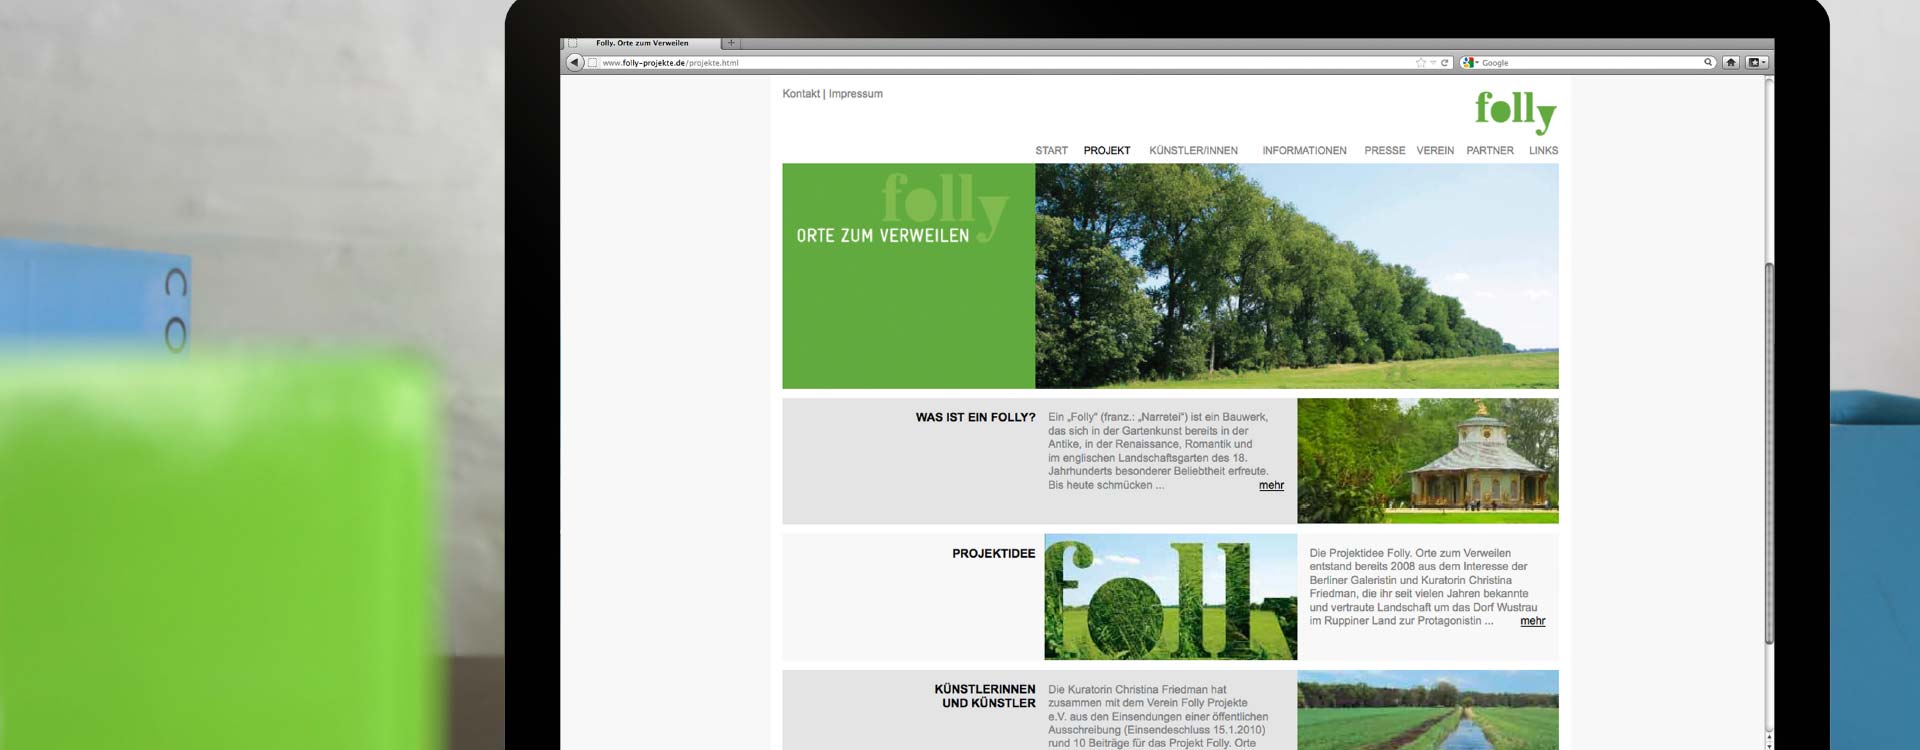 Webseite zur Ausstellung „Folly. Orte zum Verweilen“; Design: Kattrin Richter | Büro für Grafikdesign